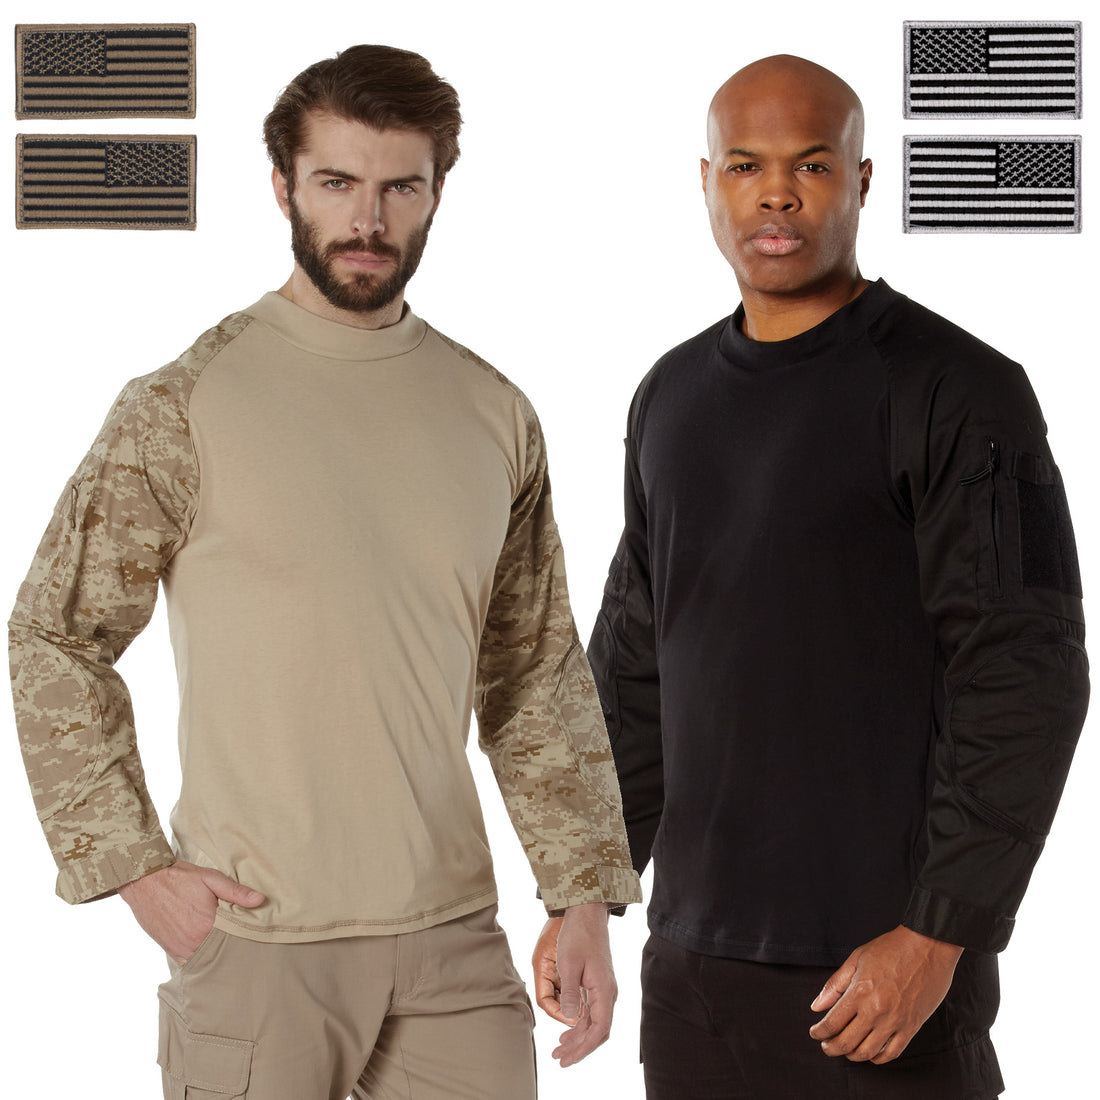 Rothco's Tactical Airsoft Combat Shirt